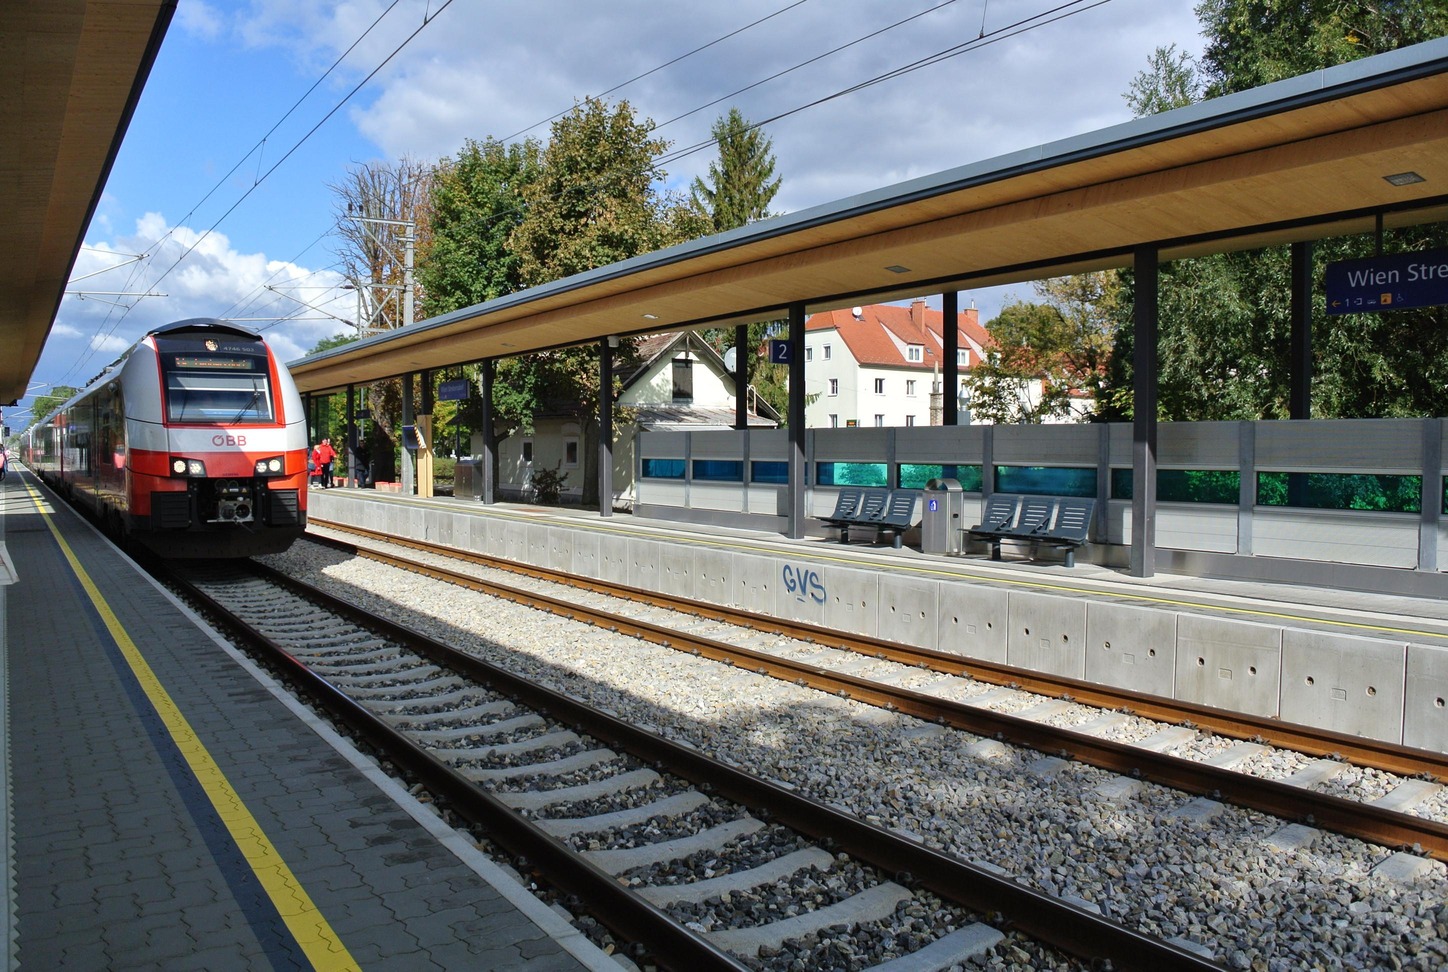 ÖBB Haltestelle Wien Strebersdorf mit Zug